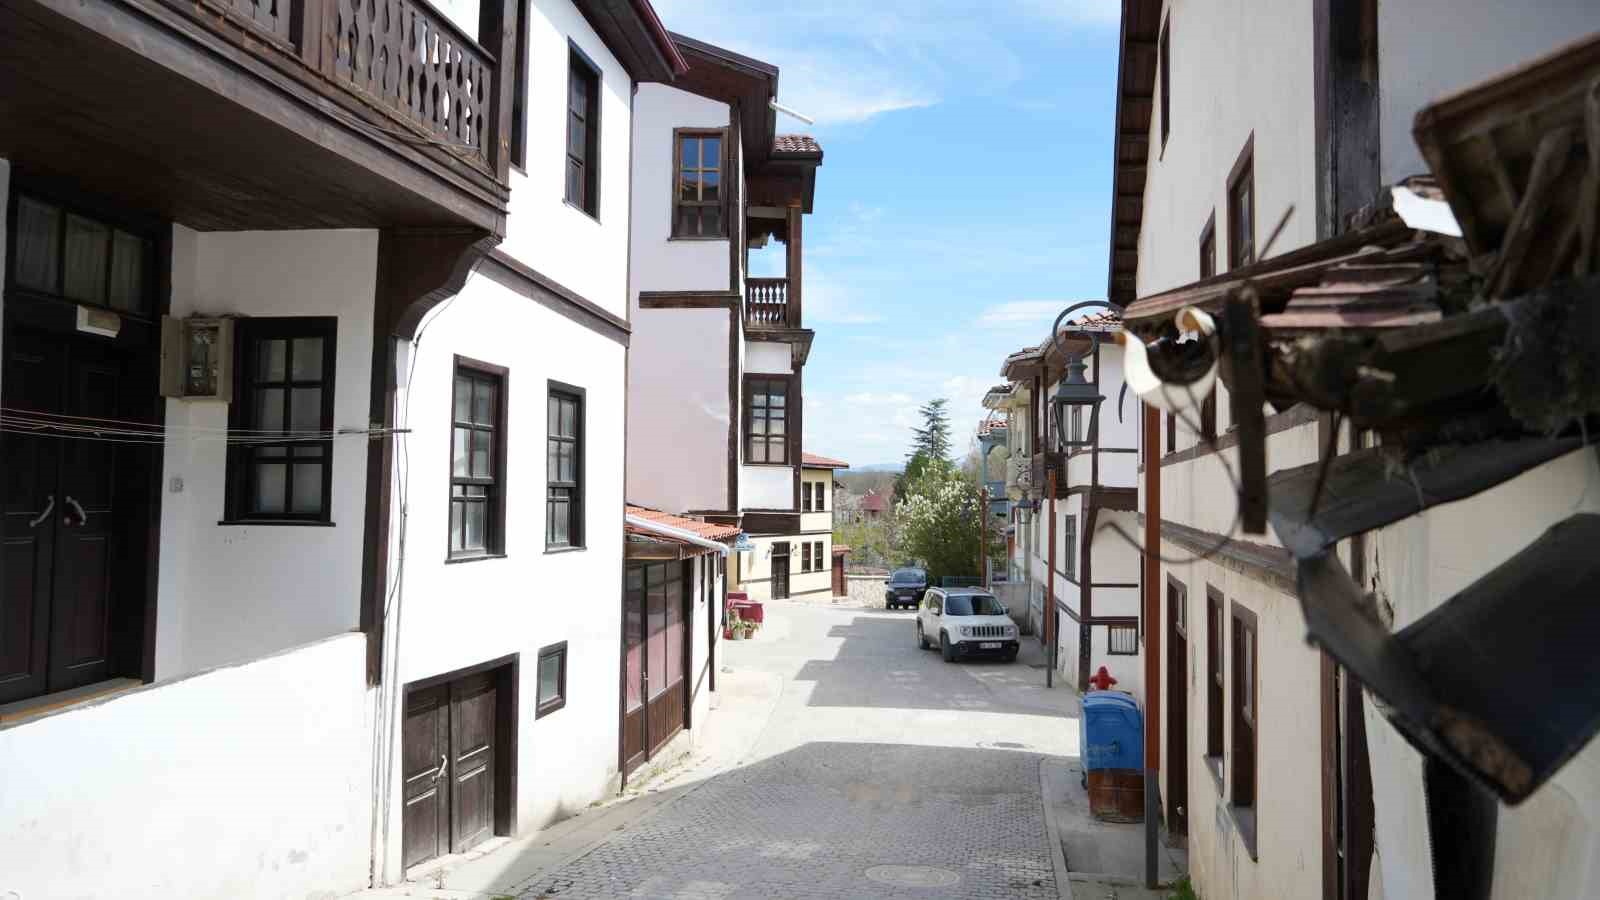 osmanlinin ilk fethettigi topraklardaki bu evler gorenleri tarihi yolculuga cikariyor 6 mnEnNv9N